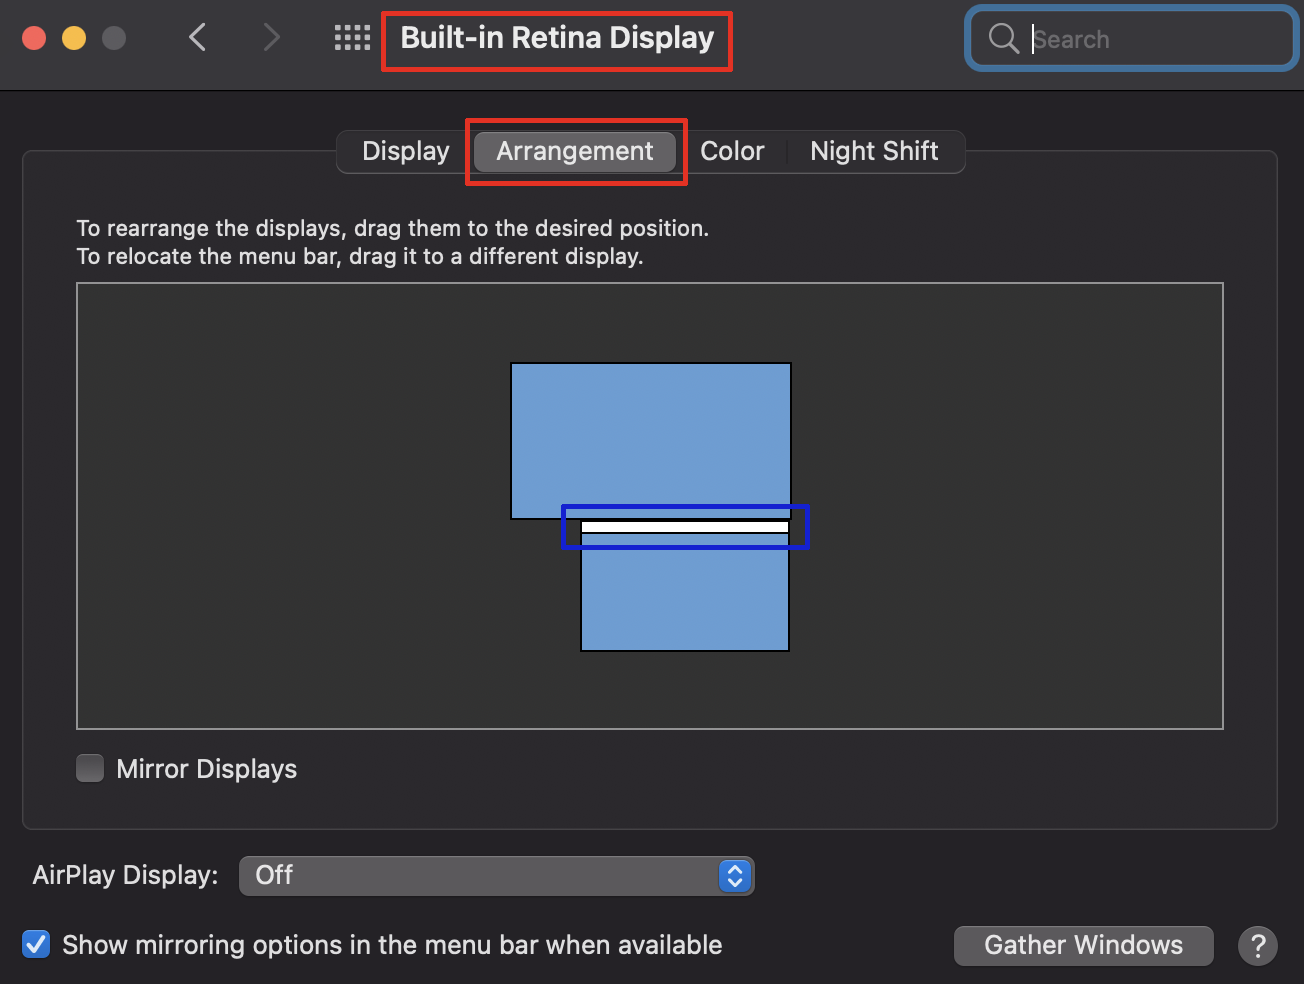 built-in-retina-display-arrangement